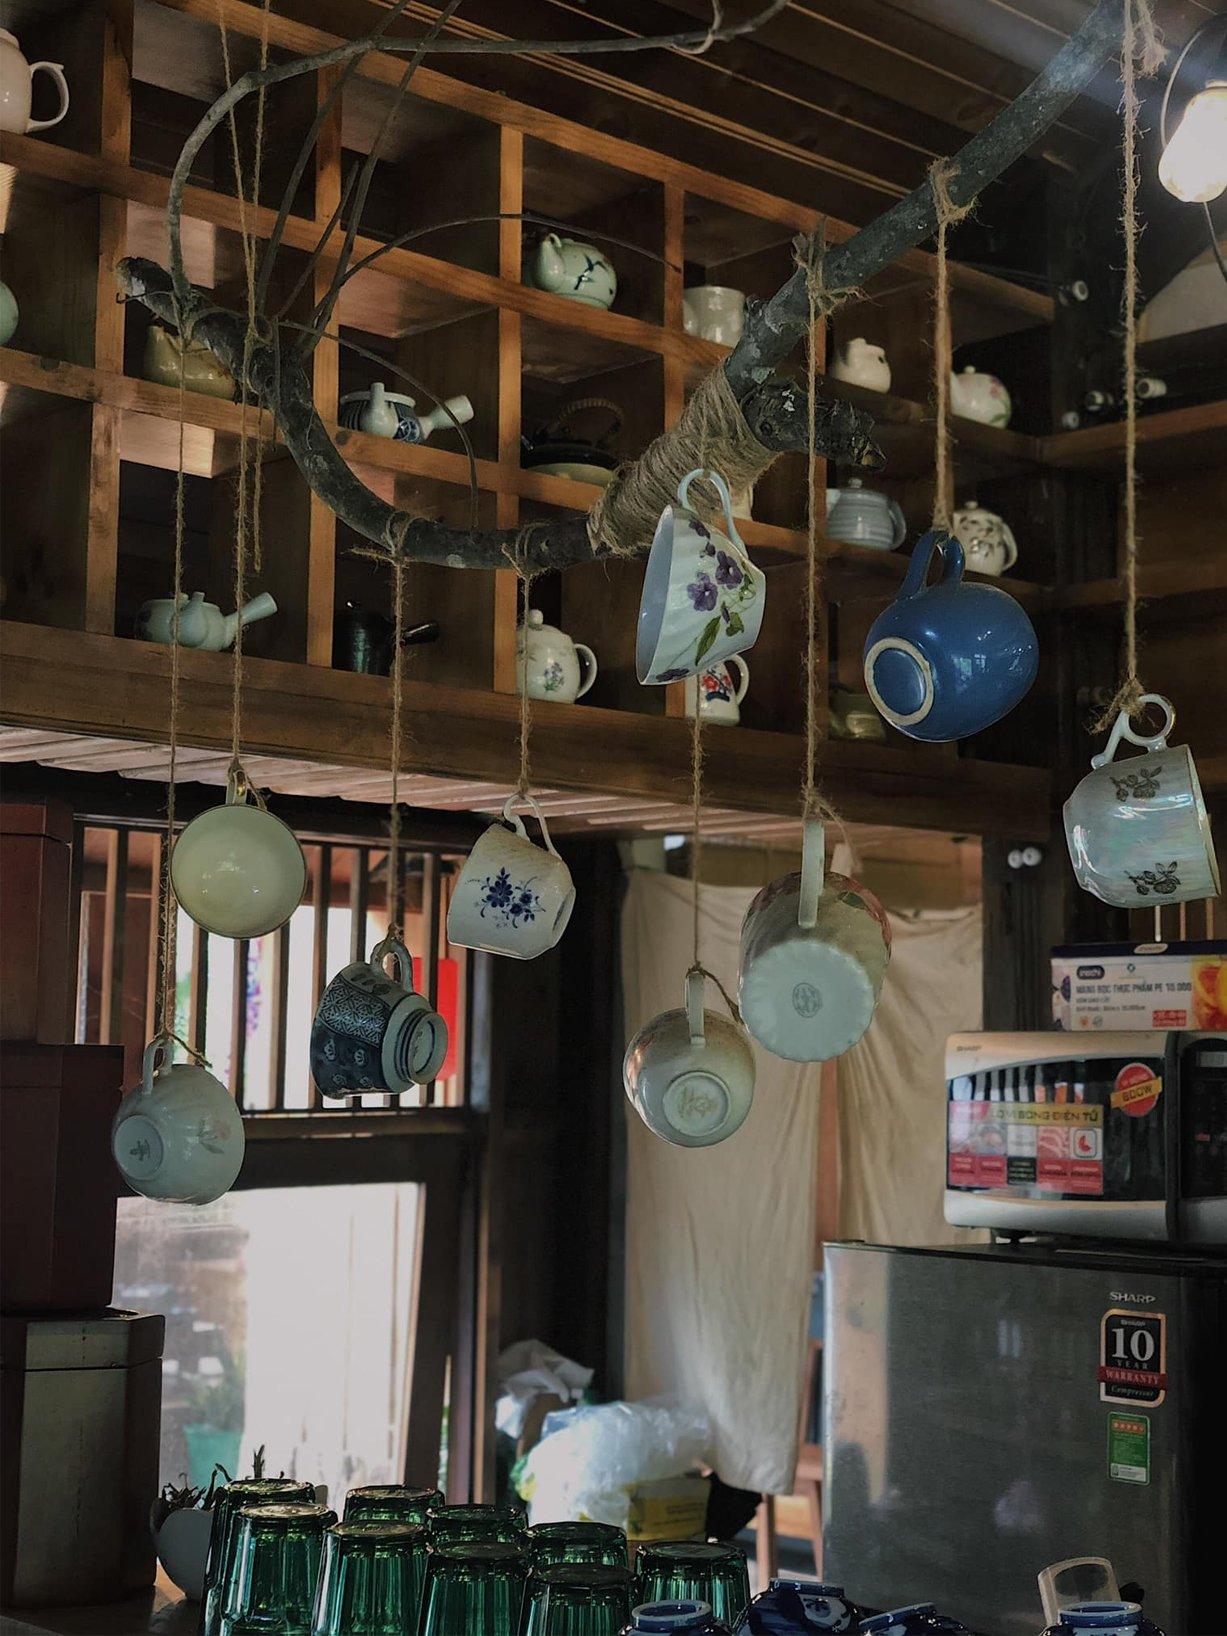 Xung quanh quán có trang trí nhiều vật dụng trà đạo (Nguồn: Facebook Ocha Đà Lạt)